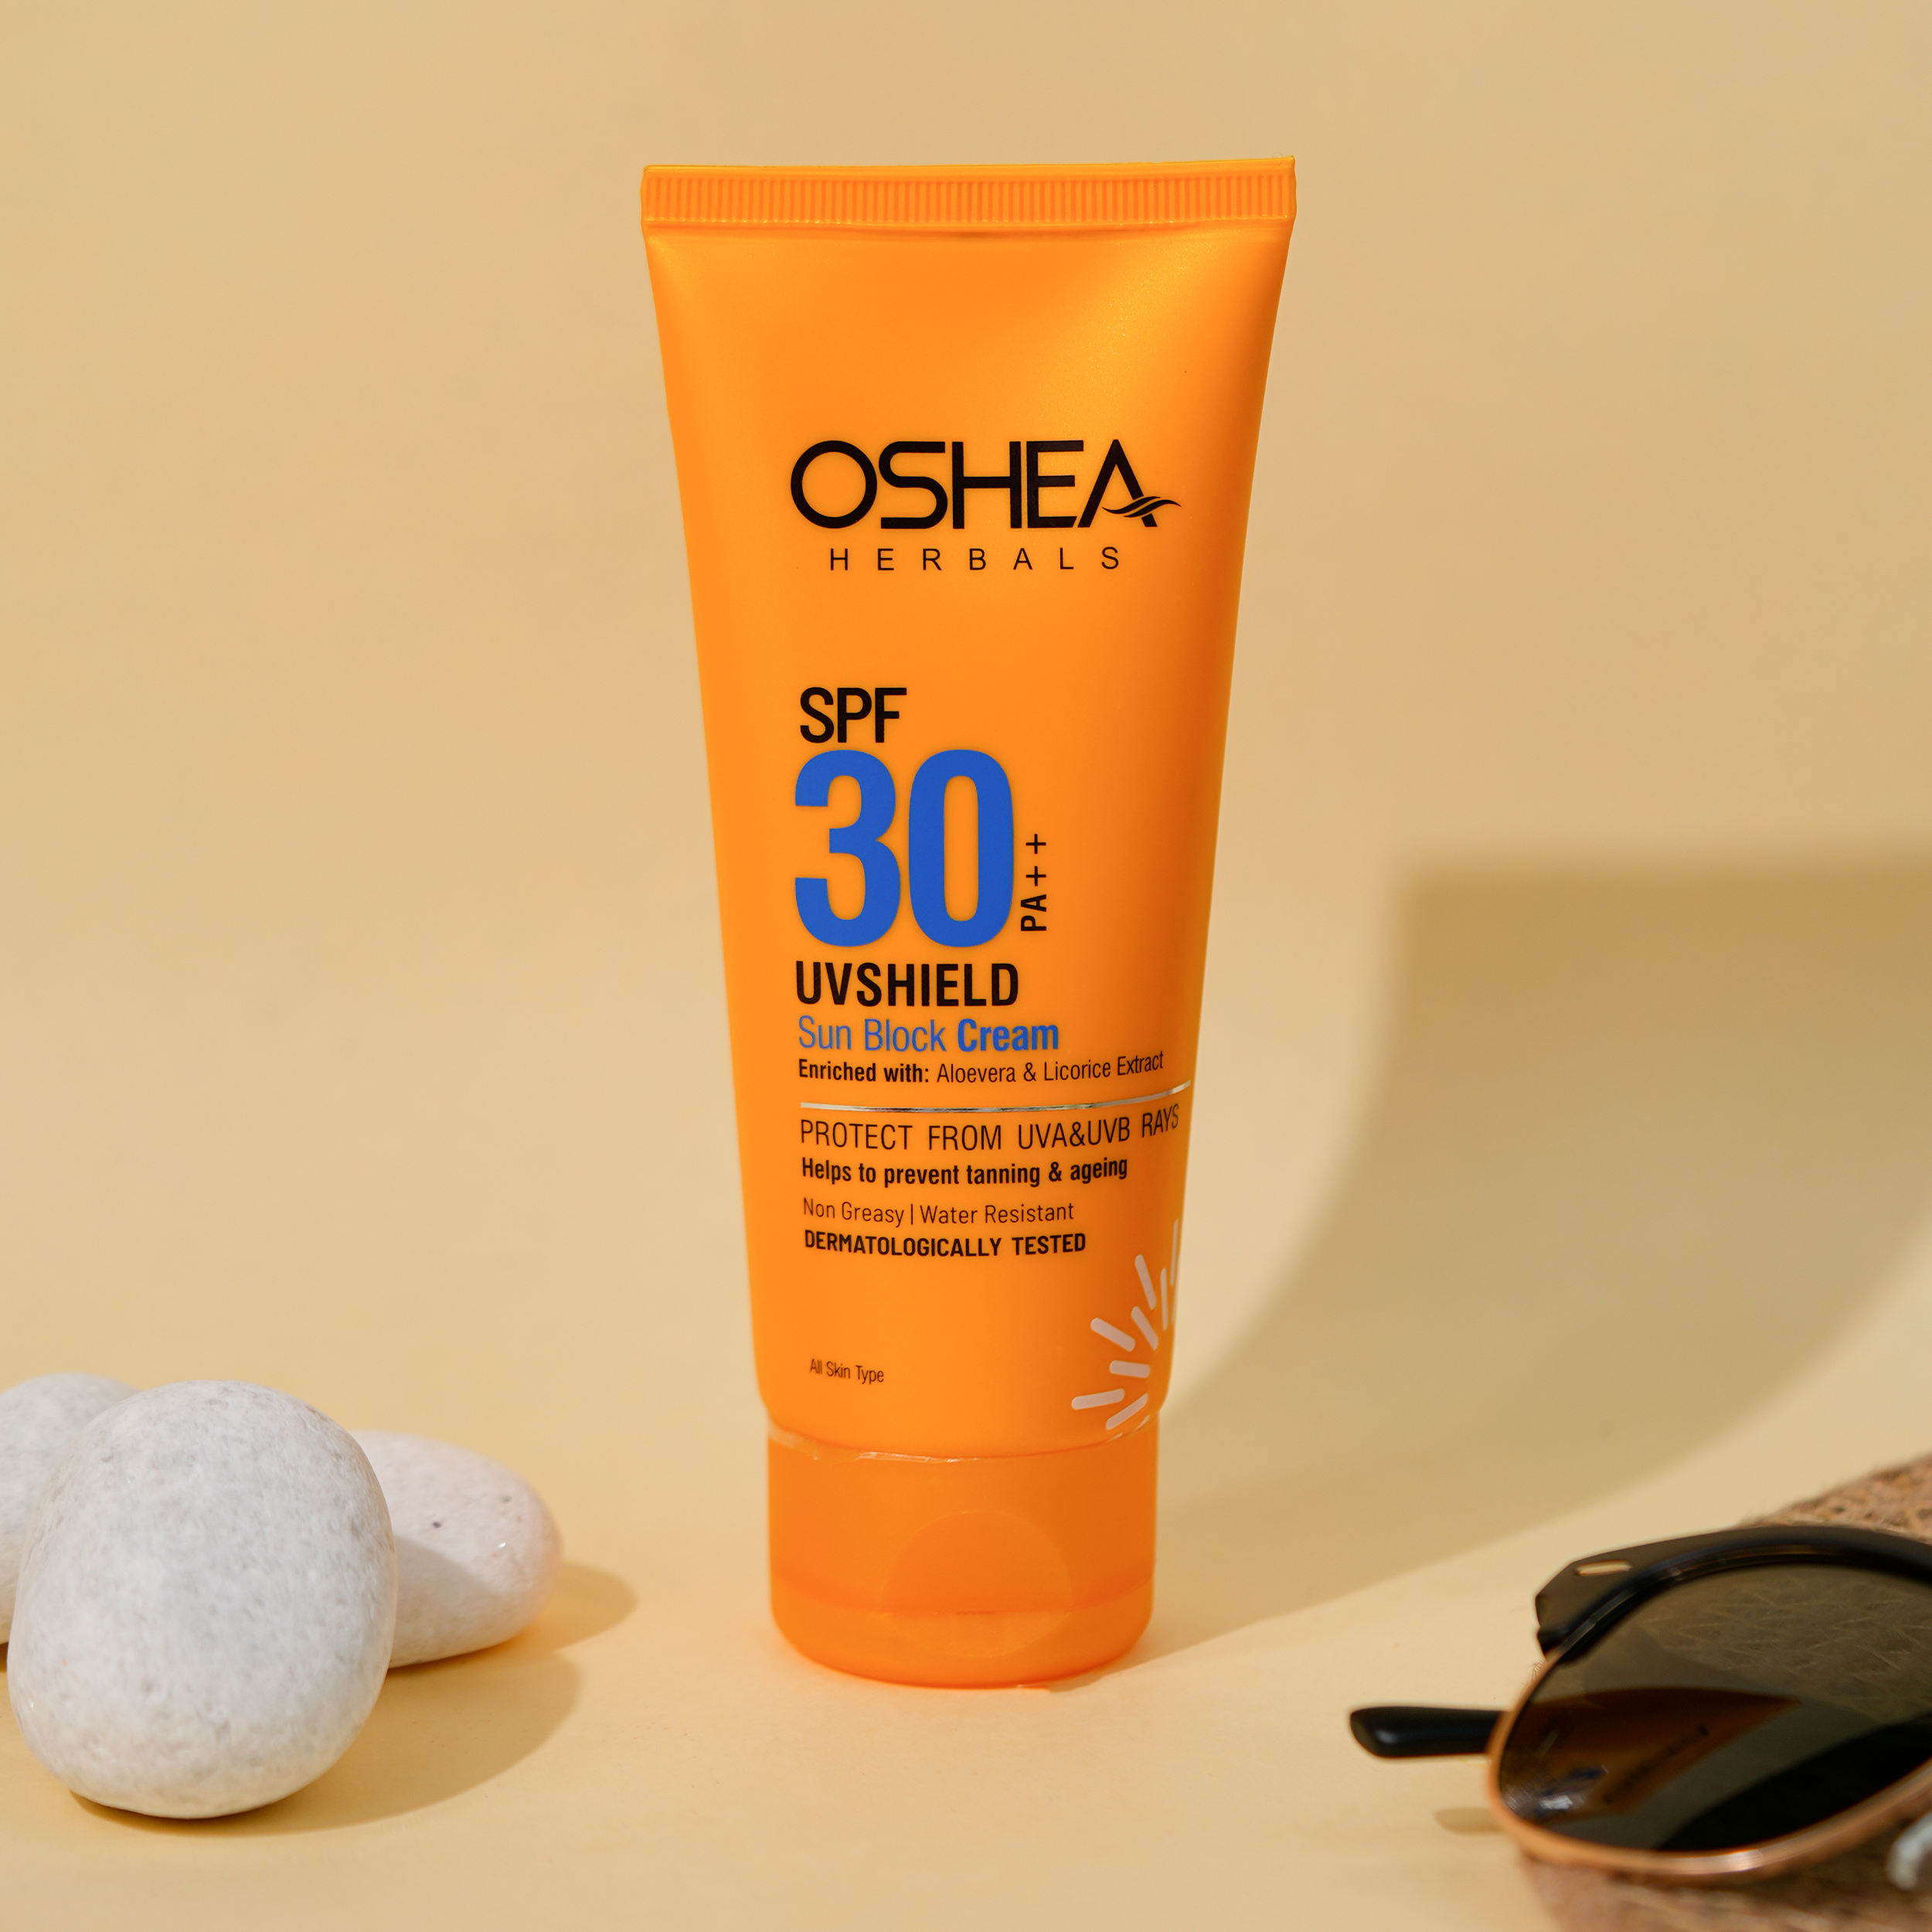 UvShield Sun Block Cream SPF 30 PA Oshea Herbals